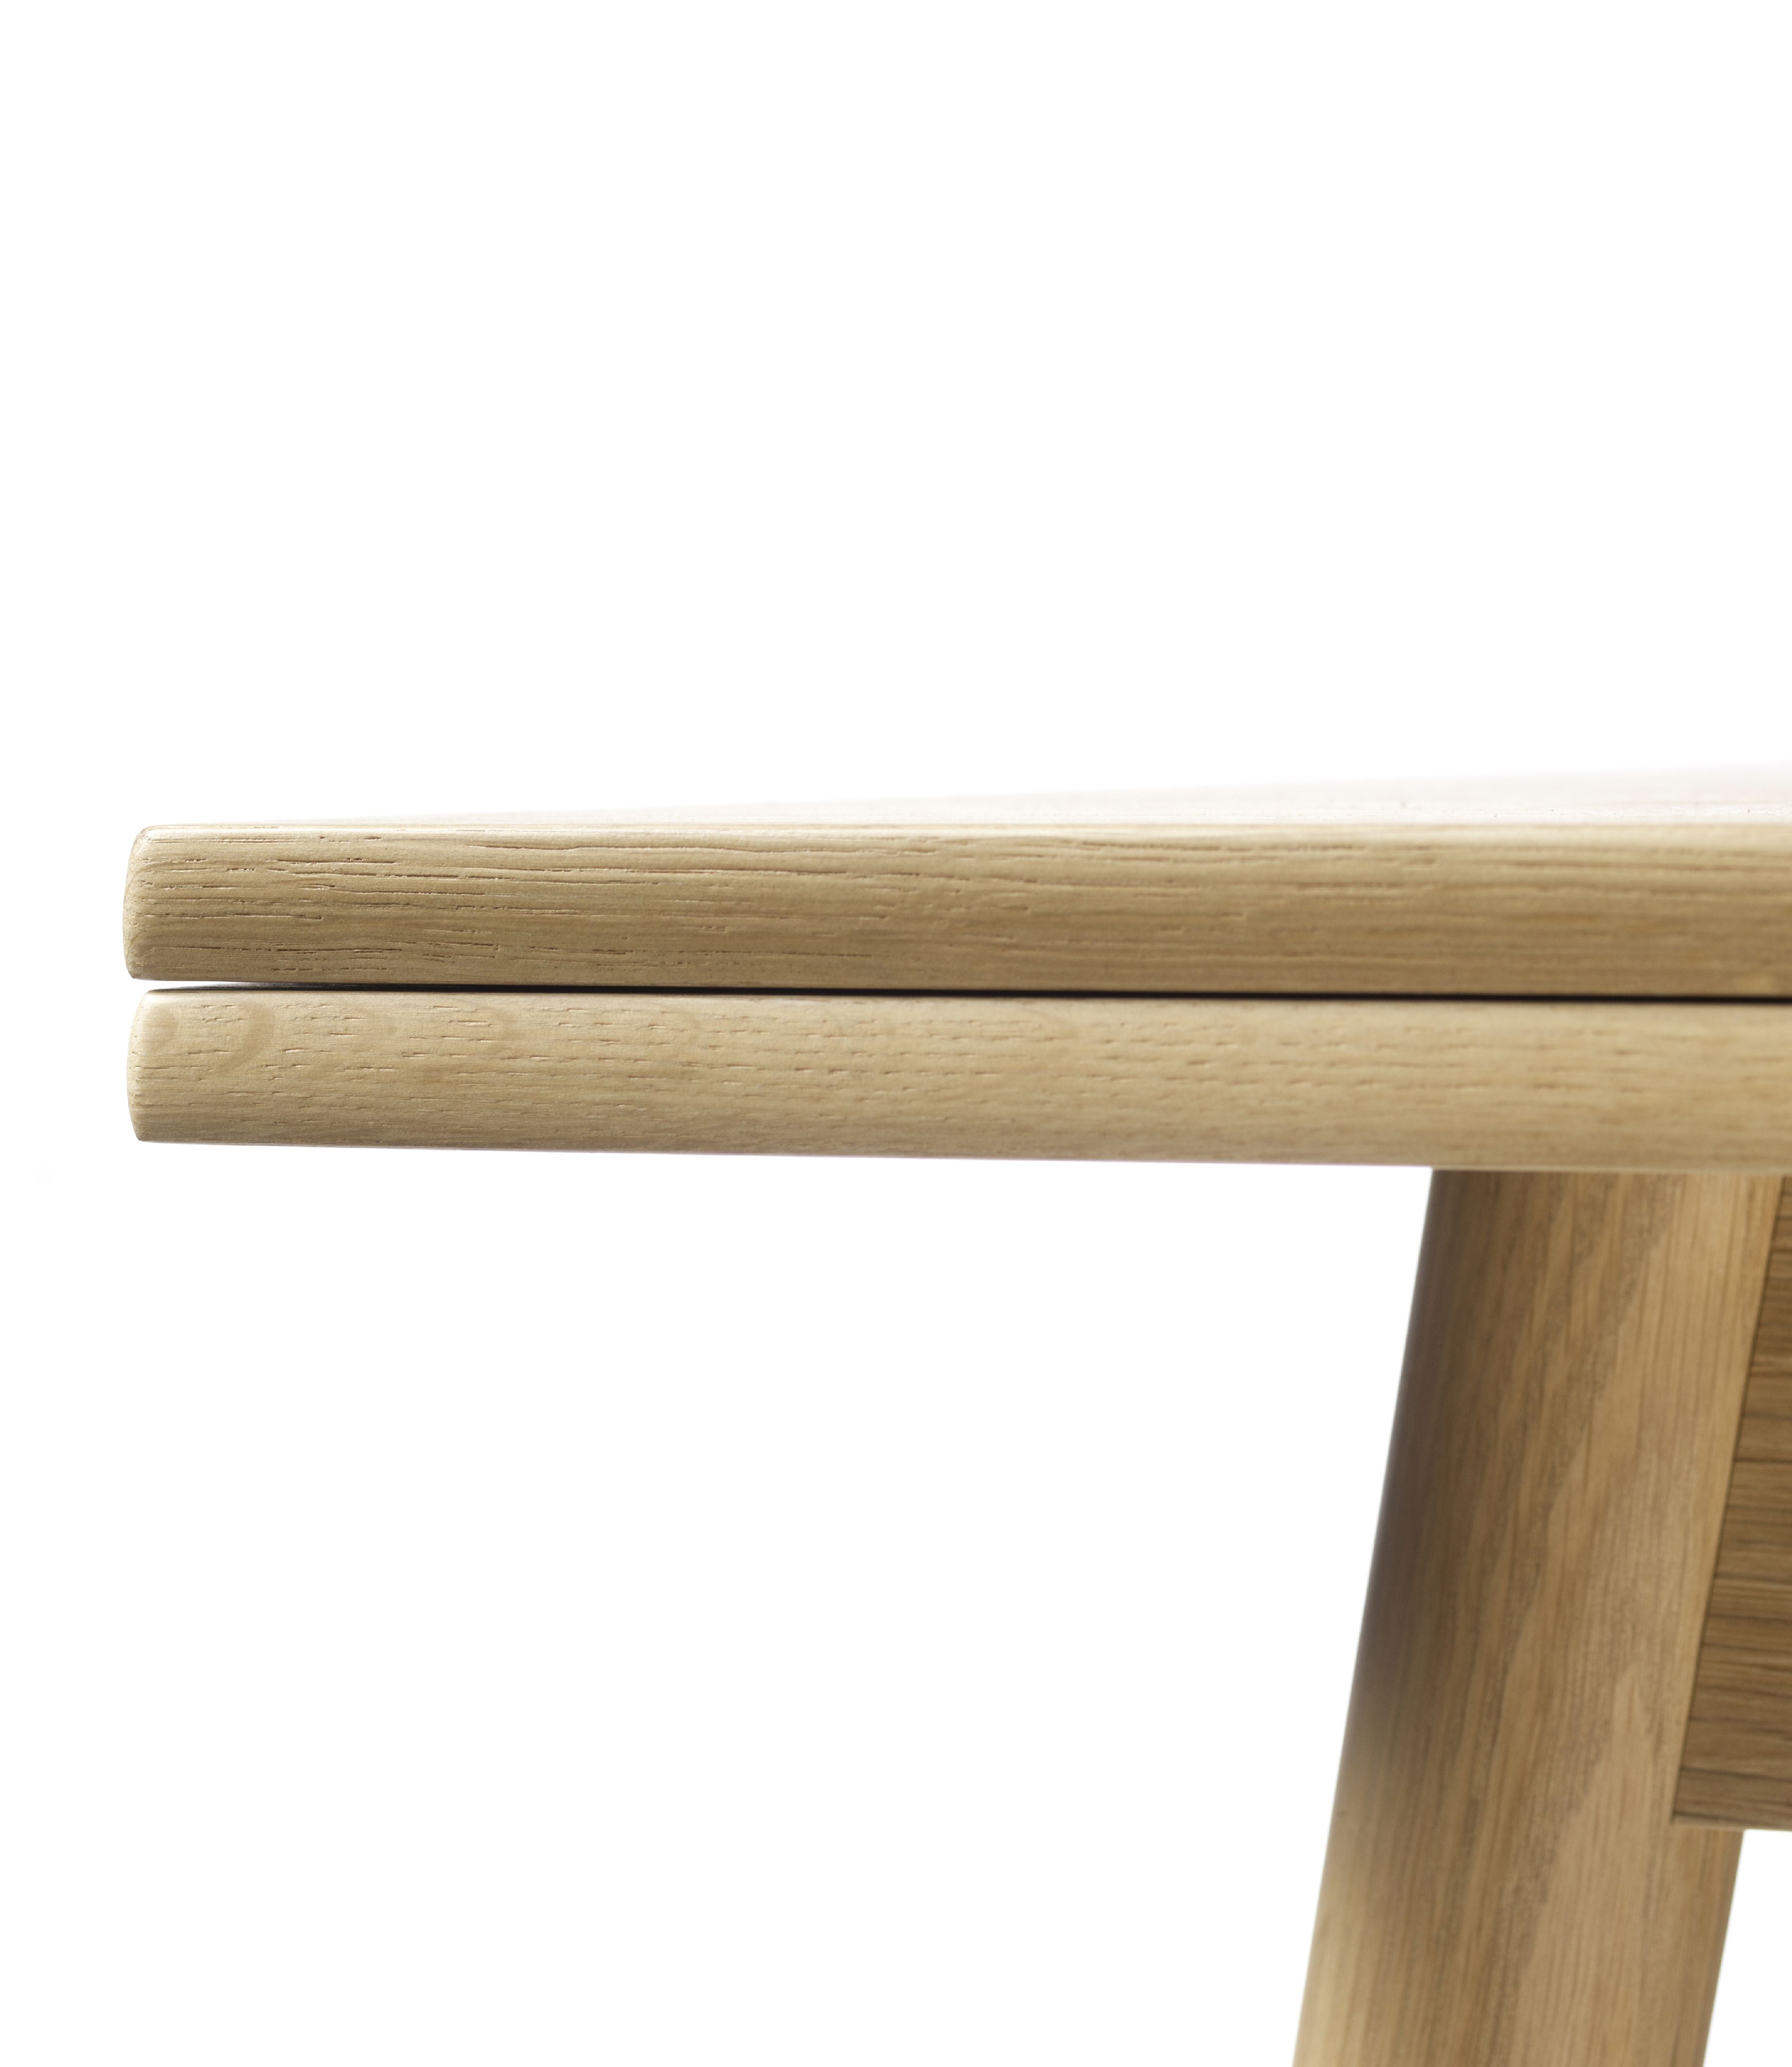 Fdb Møbler C35 c matbord med holländska drag ut